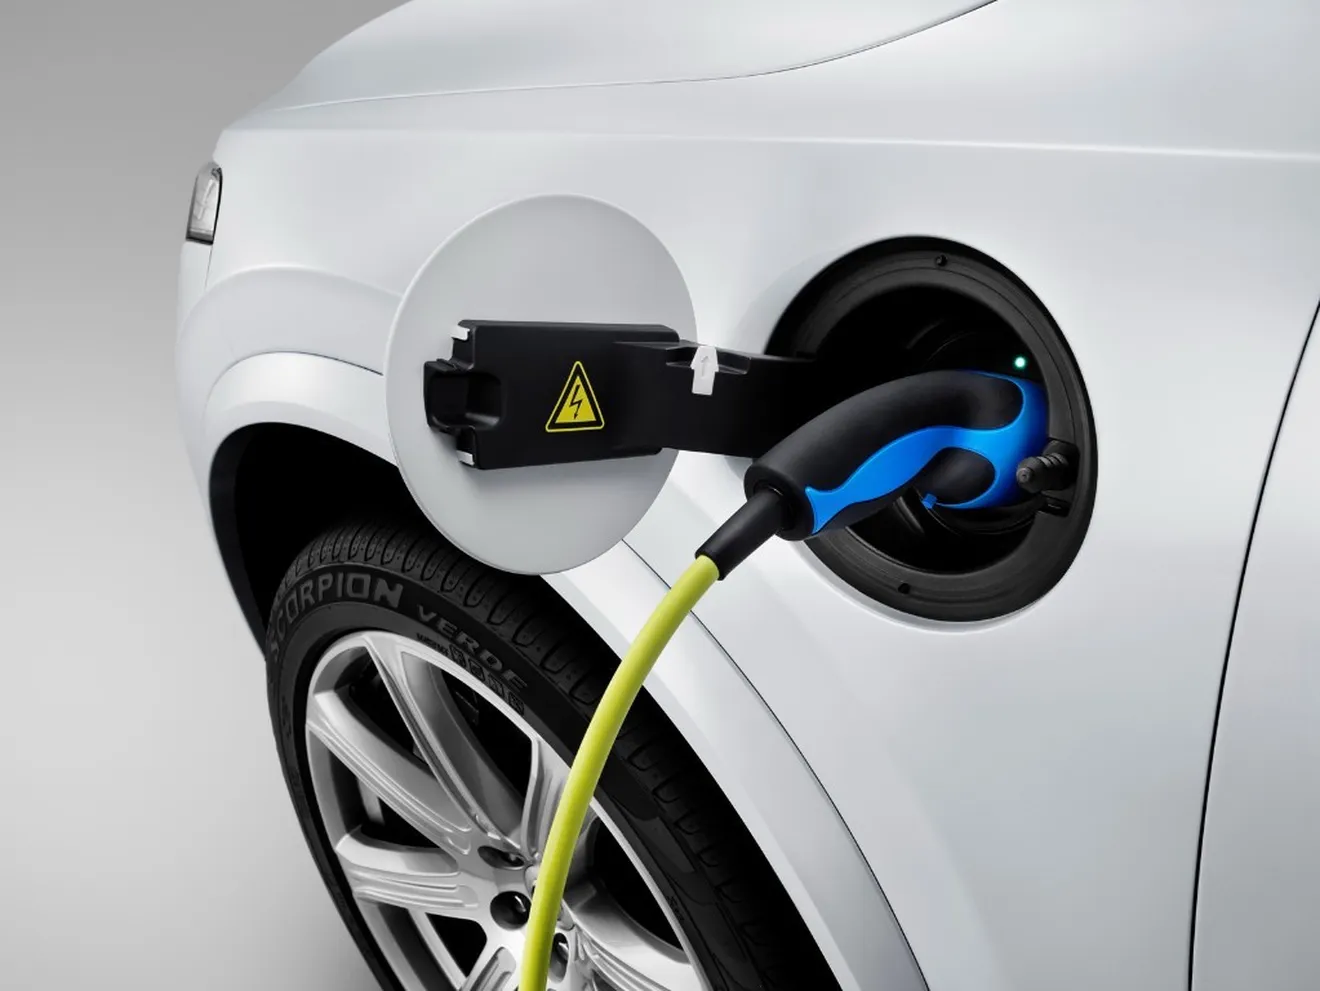 Volvo se centrará en los híbridos enchufables pausando el lanzamiento de eléctricos